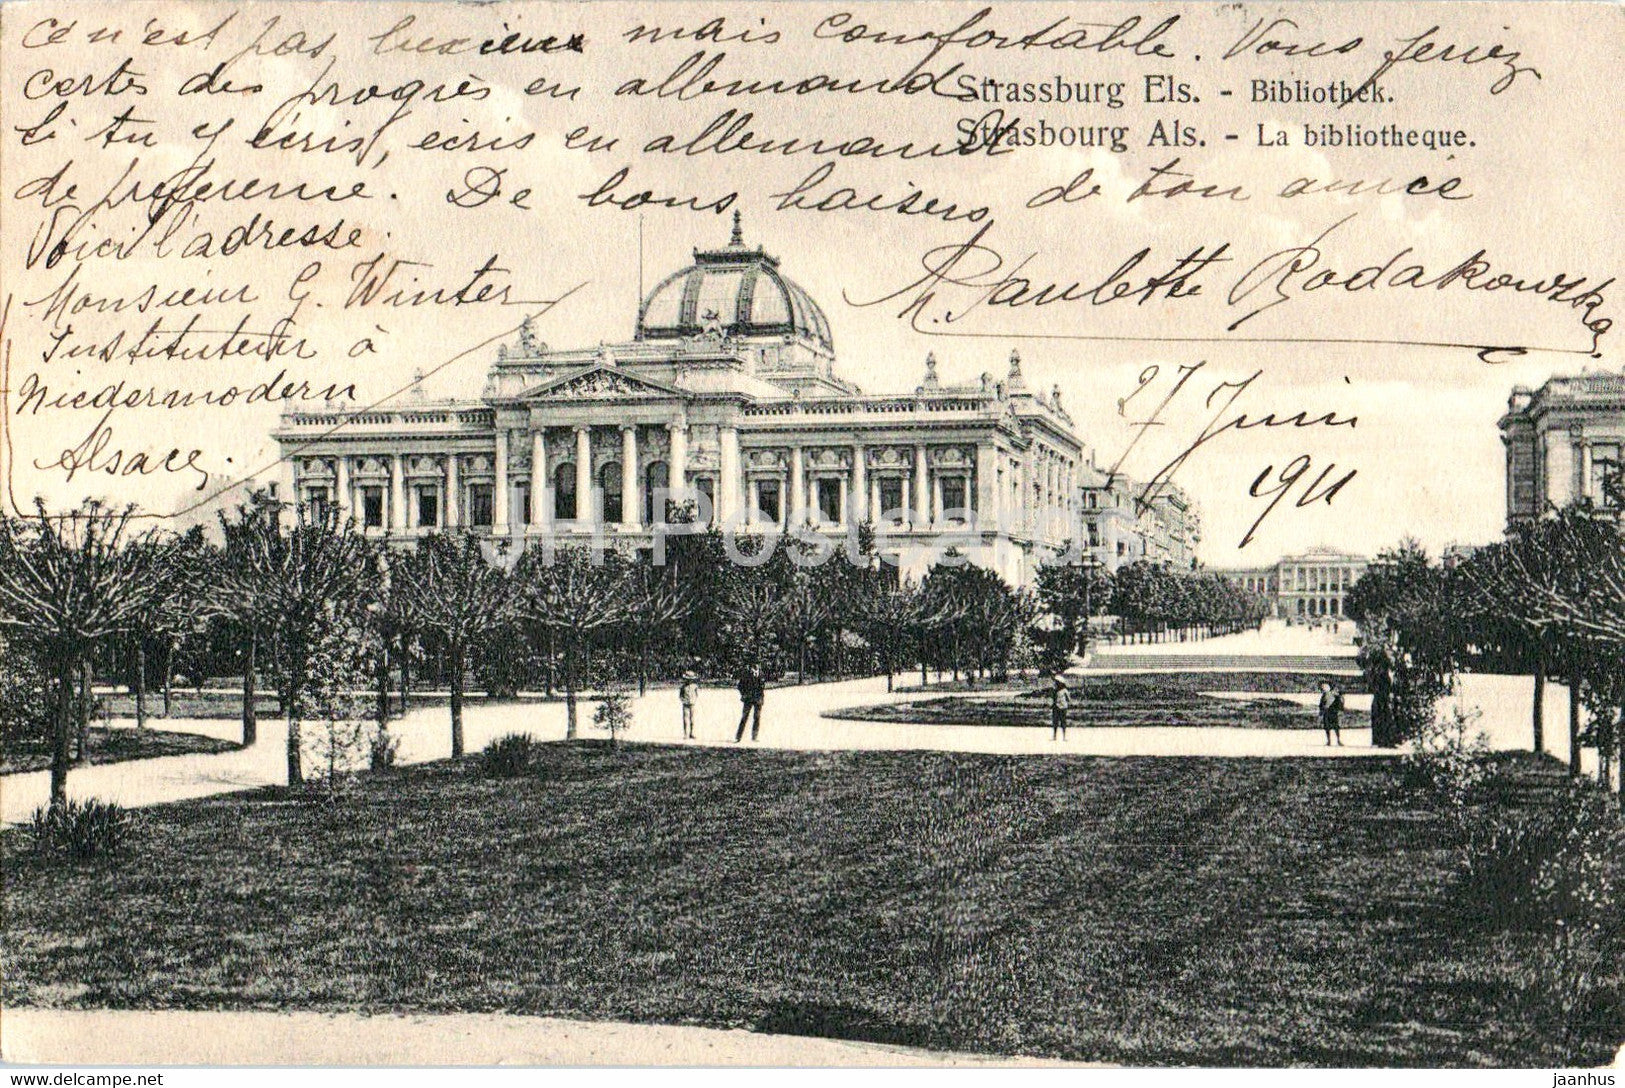 Strasbourg Als - La Bibliotheque - Strassburg Els - Bibliothek - old postcard - 1911 - France - used - JH Postcards